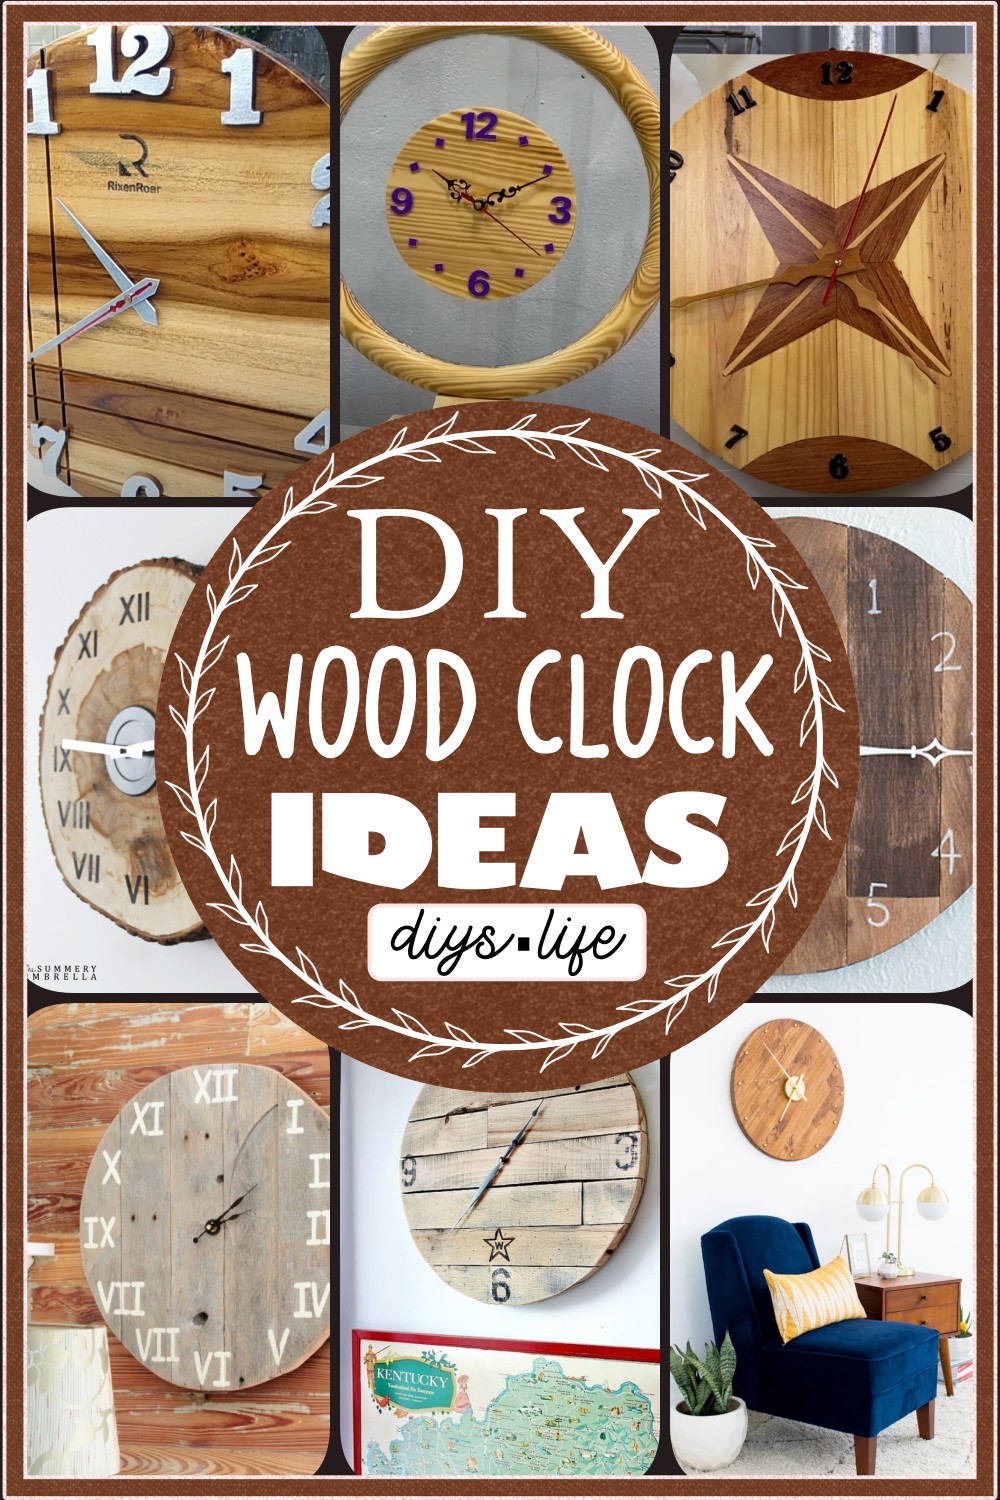 DIY wood clock Ideas 2